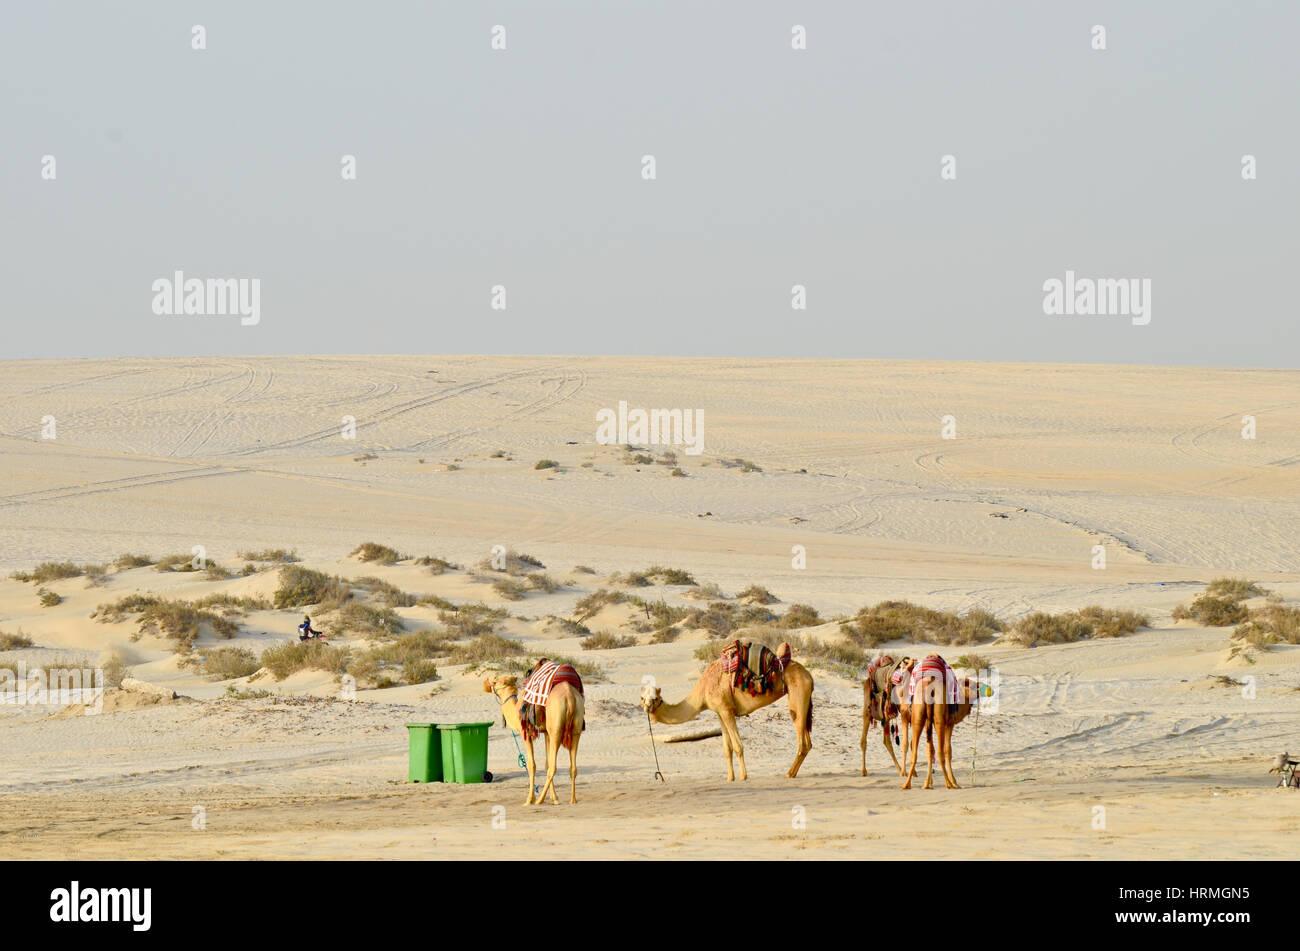 Camp de base du désert avec des chameaux et tente. Les voies de véhicules 4X4 utilisés en safari dans le désert peut être vu Banque D'Images